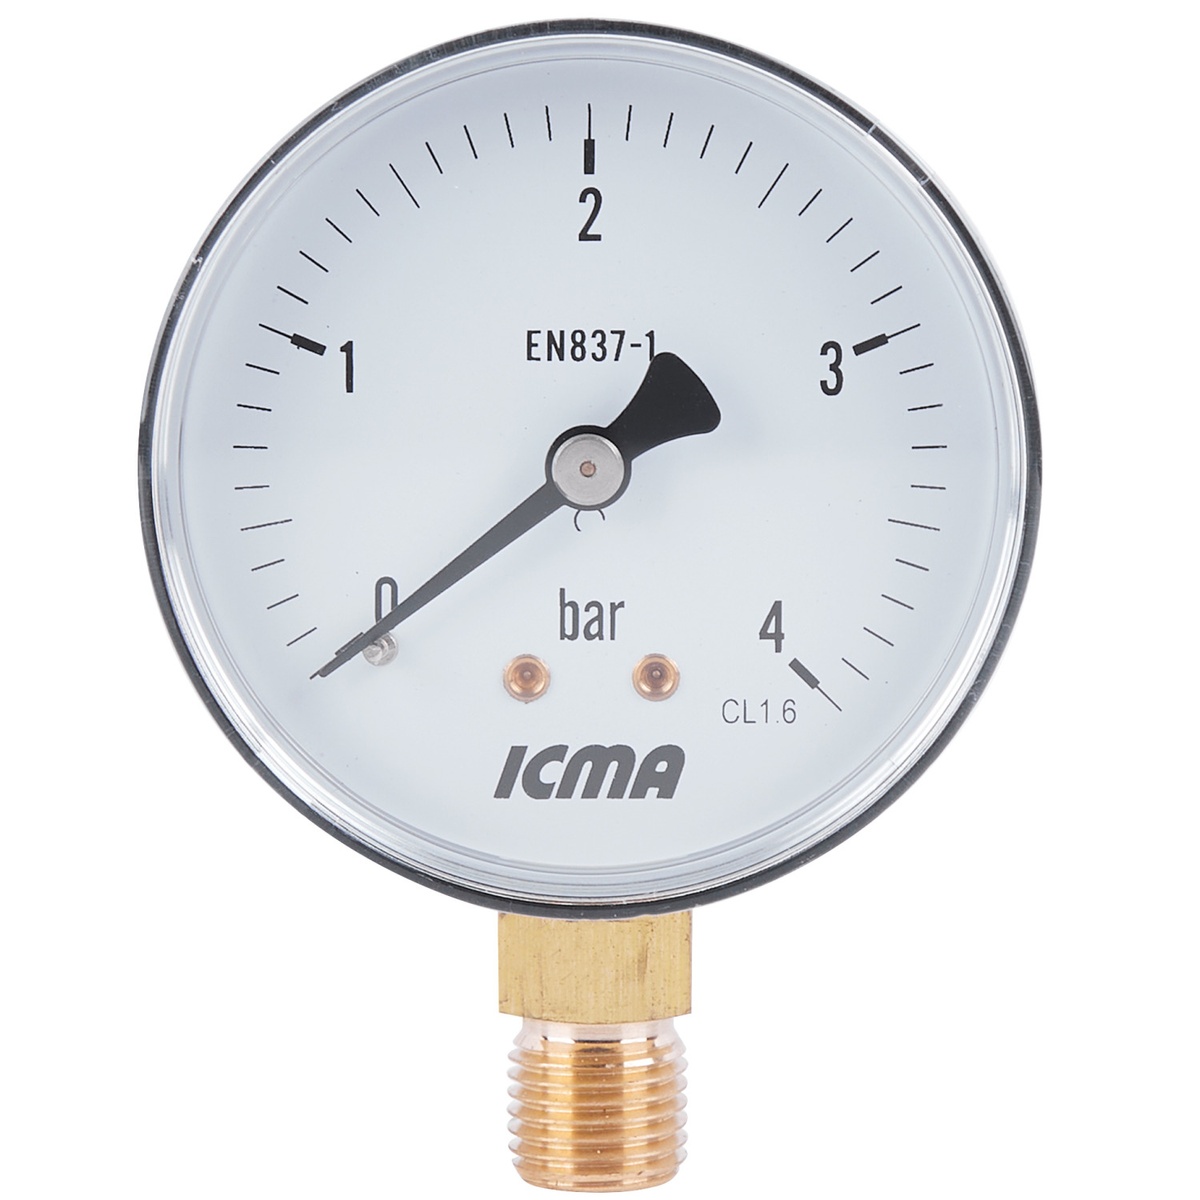 Манометр давления воды ICMA 244 на 4 бар с нижним подключением 1/4" корпус Ø63 мм 91244AB04